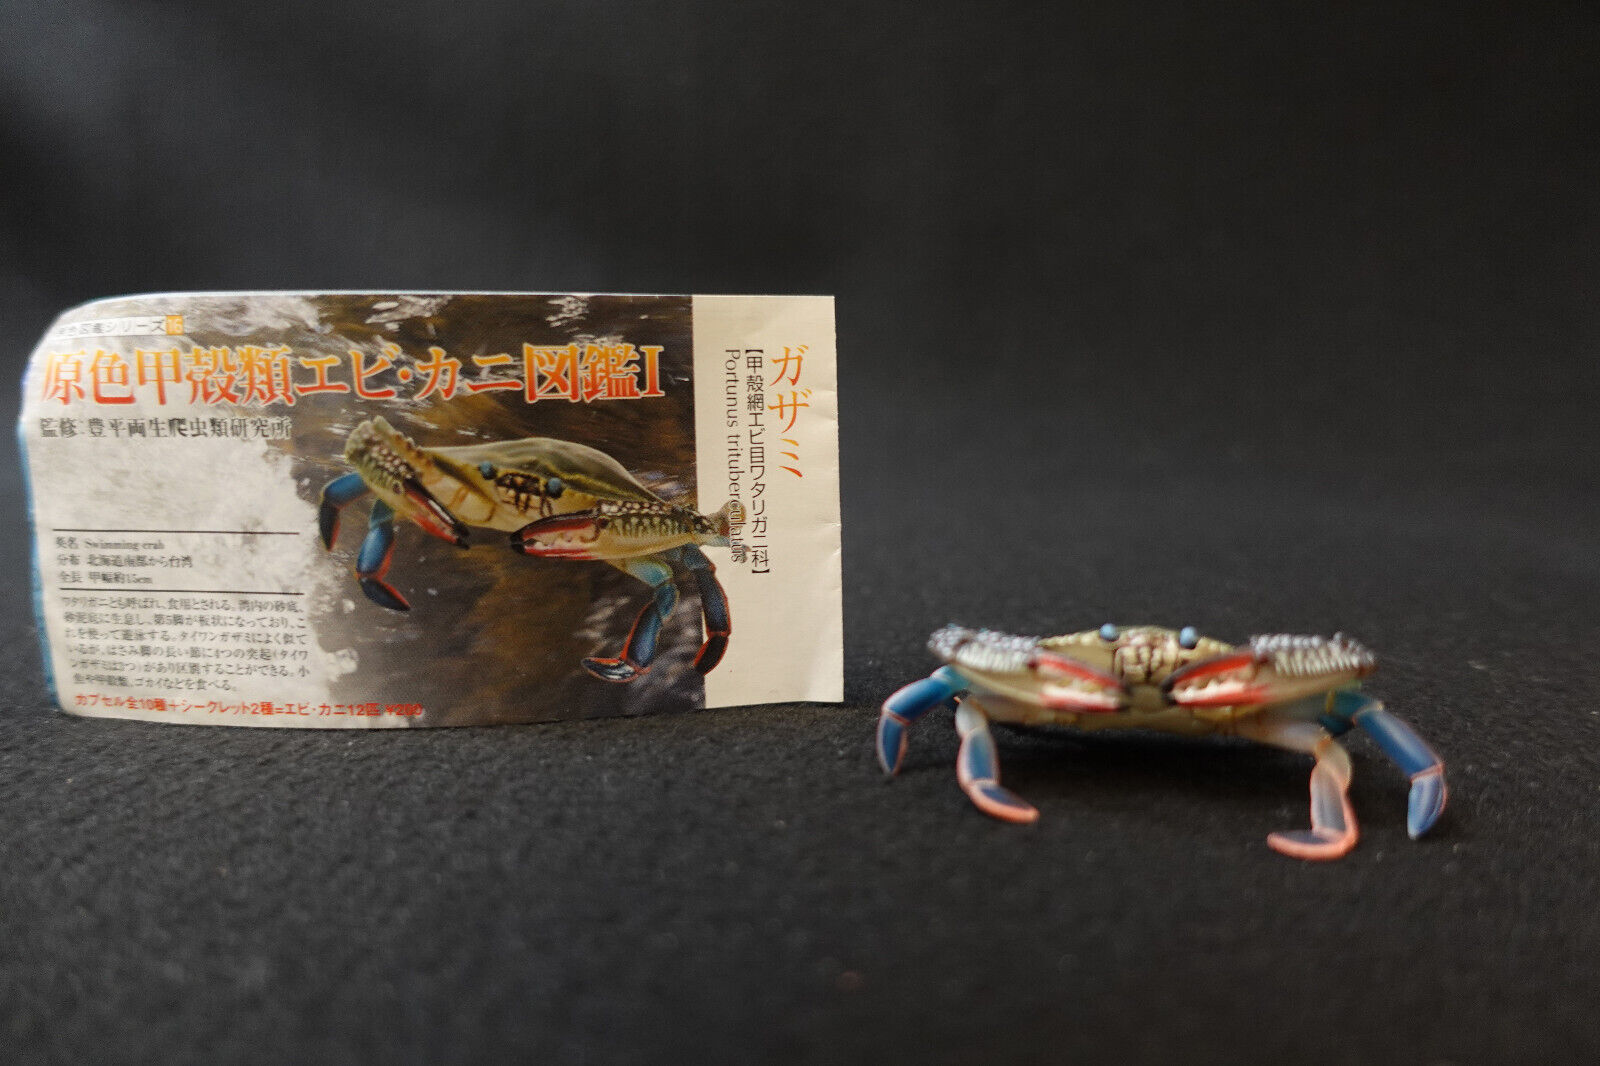 Yujin Takara Kaiyodo Retired Japan Exclusive Blue Swimming Crab 